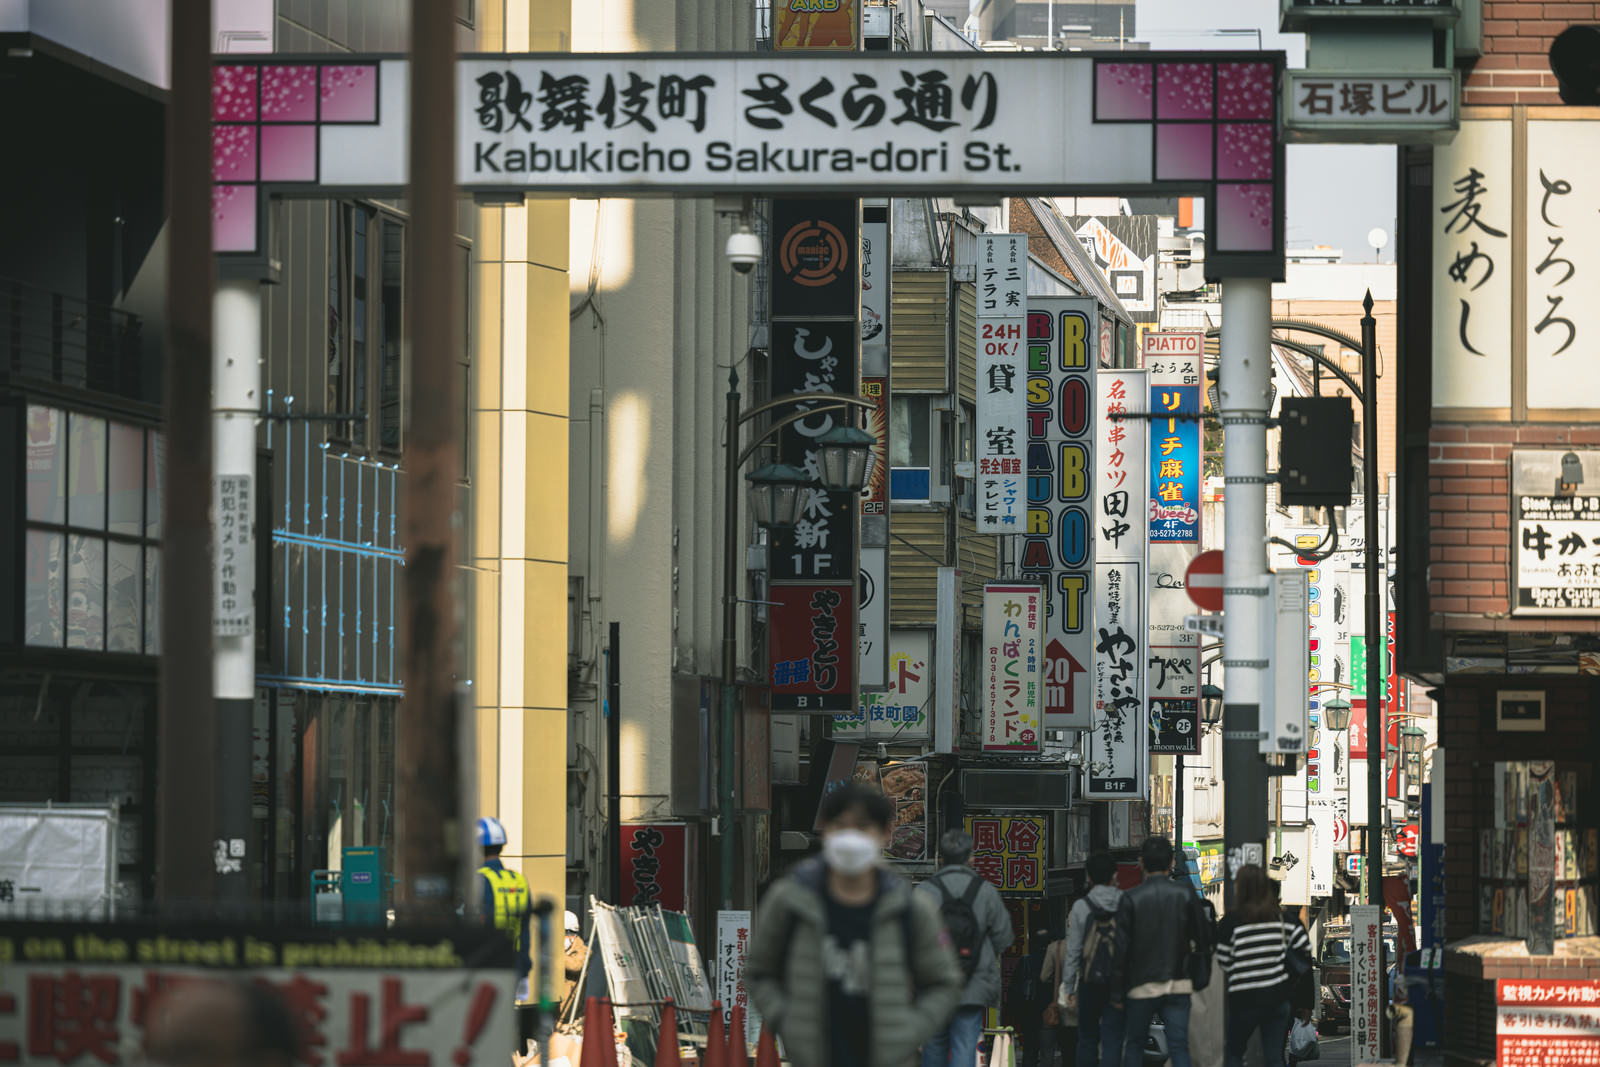 「歌舞伎町さくら通り沿いと人混み | フリー素材のぱくたそ」の写真